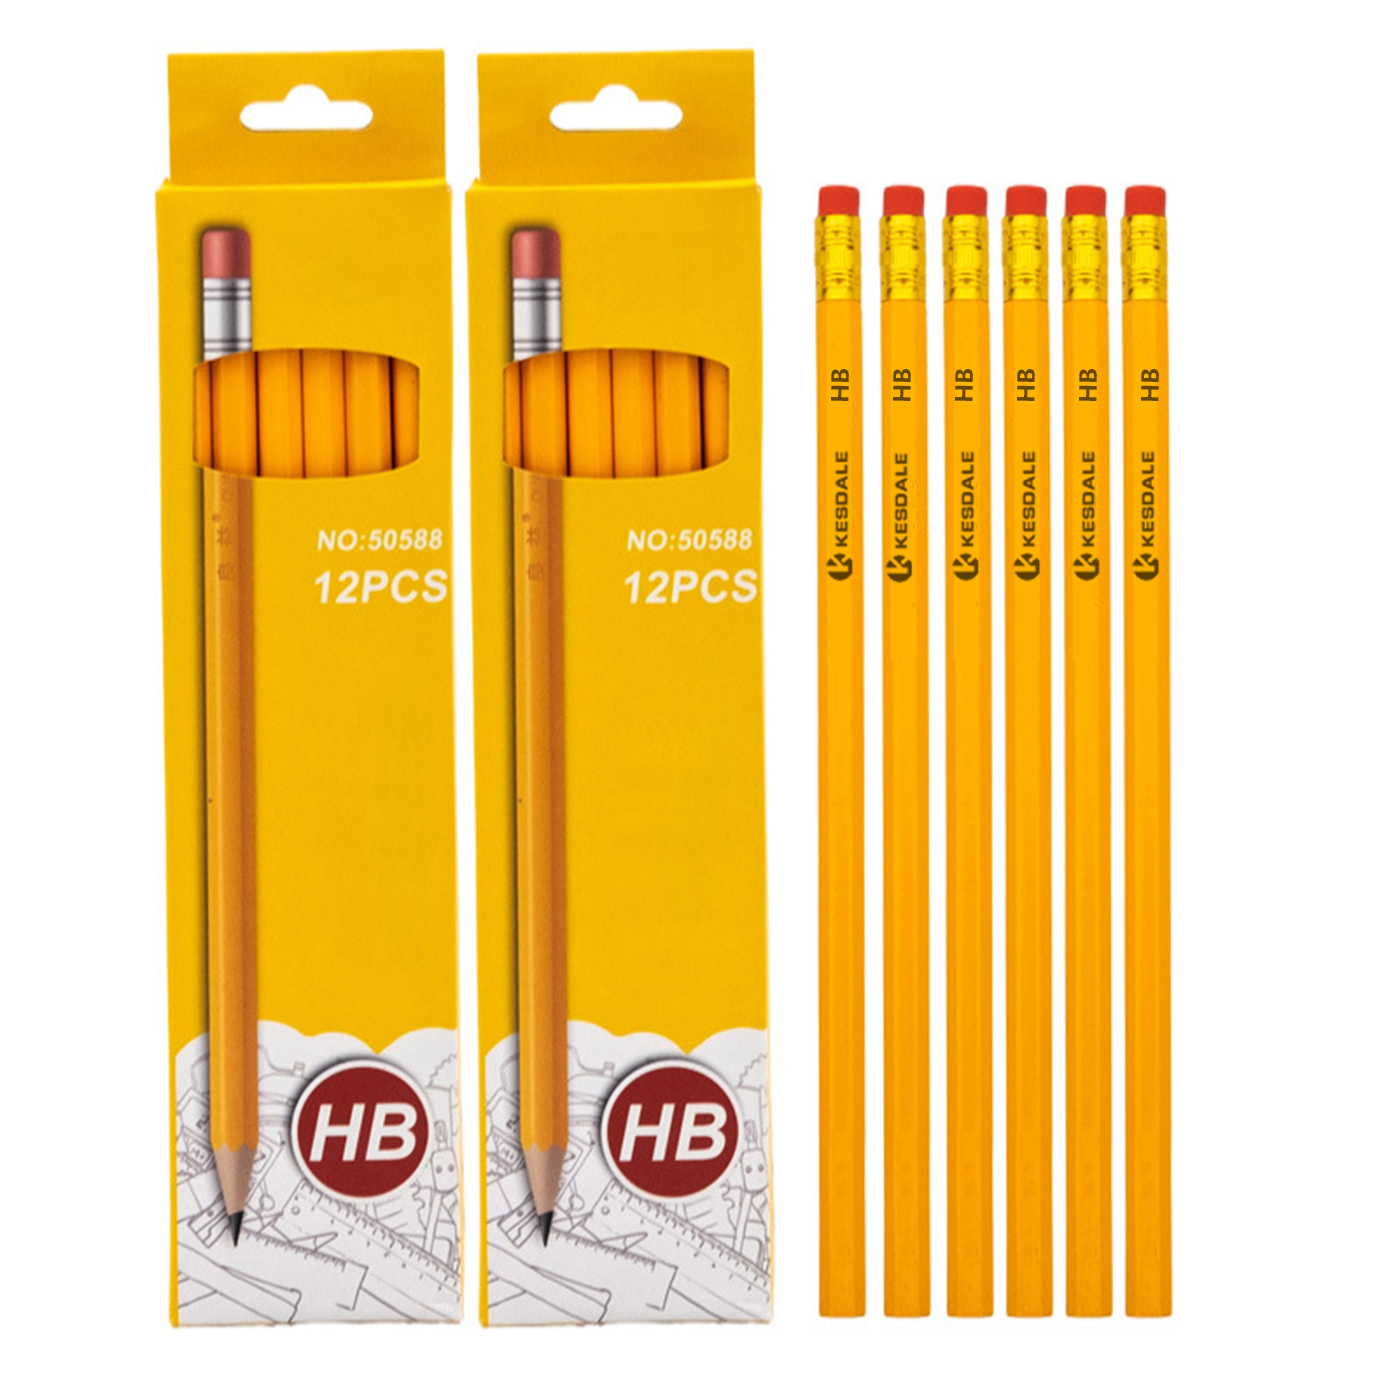 12 Pcs Personalized HB Pencil